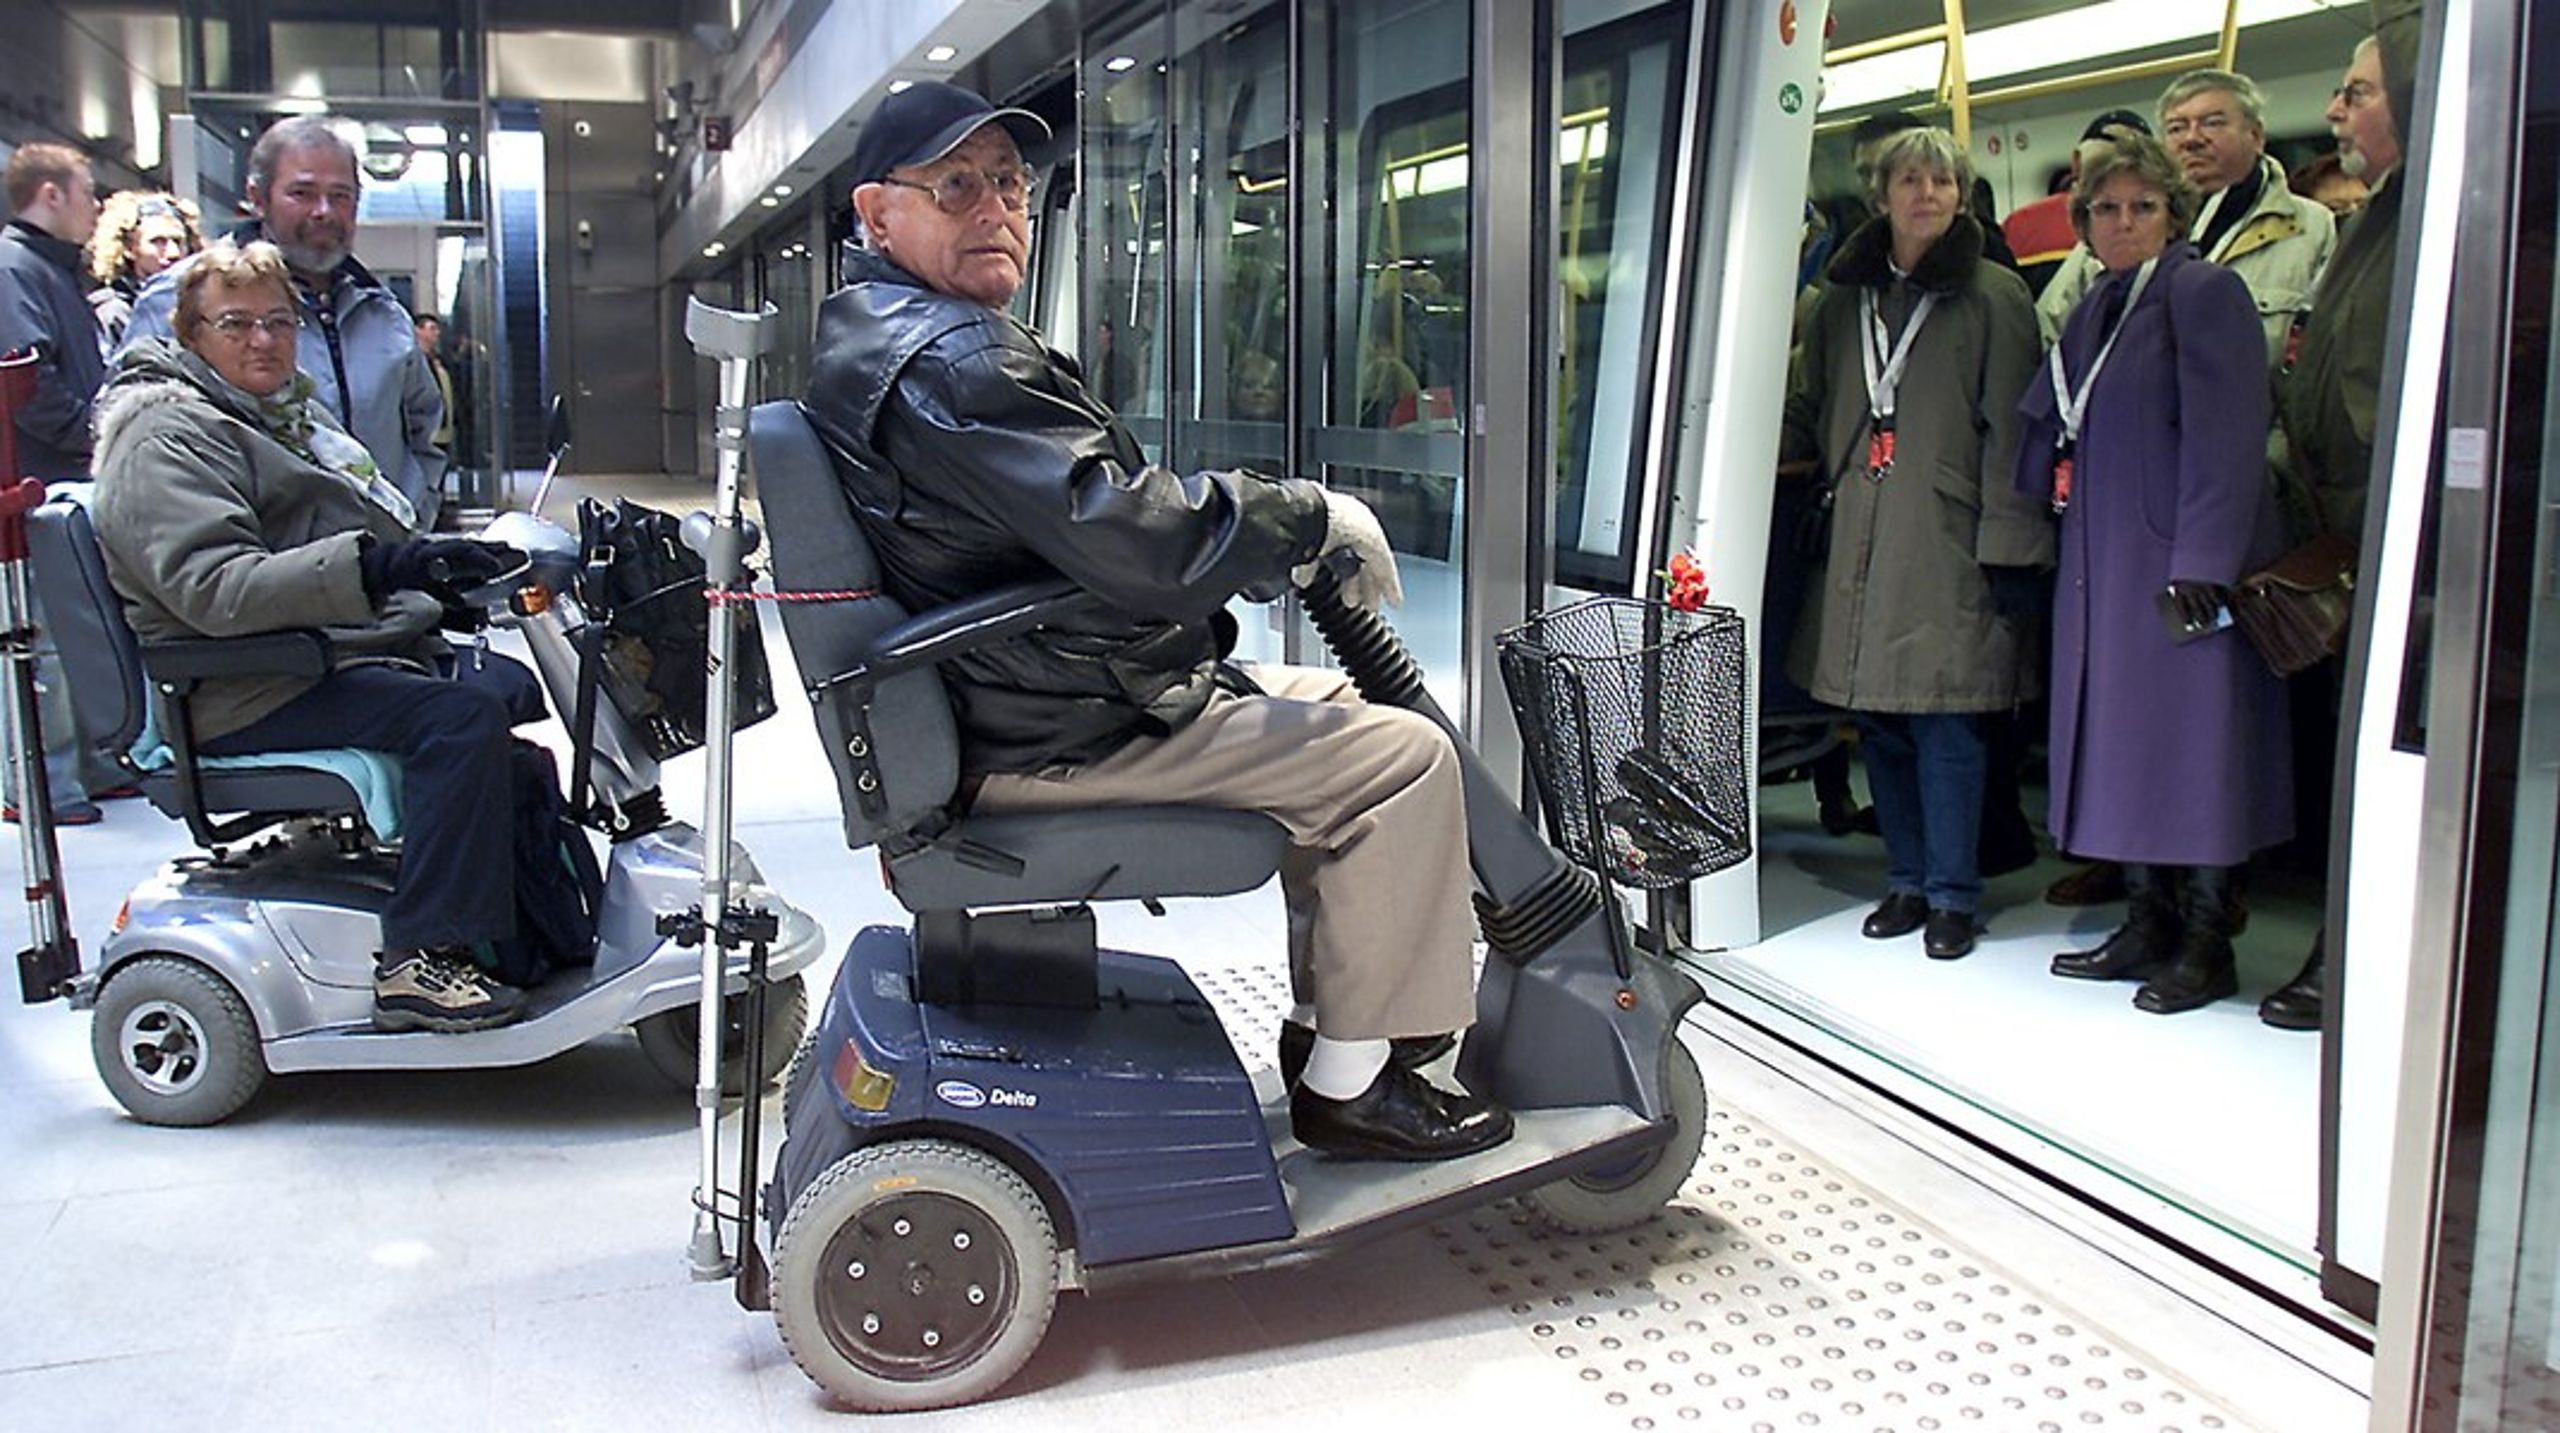 Digitaliseringen af den kollektive transport kan få alvorlig indflydelse på livskvaliteten og føre til øget ensomhed, især blandt ældre borgere og borgere med handicap, mener tre organisationer.